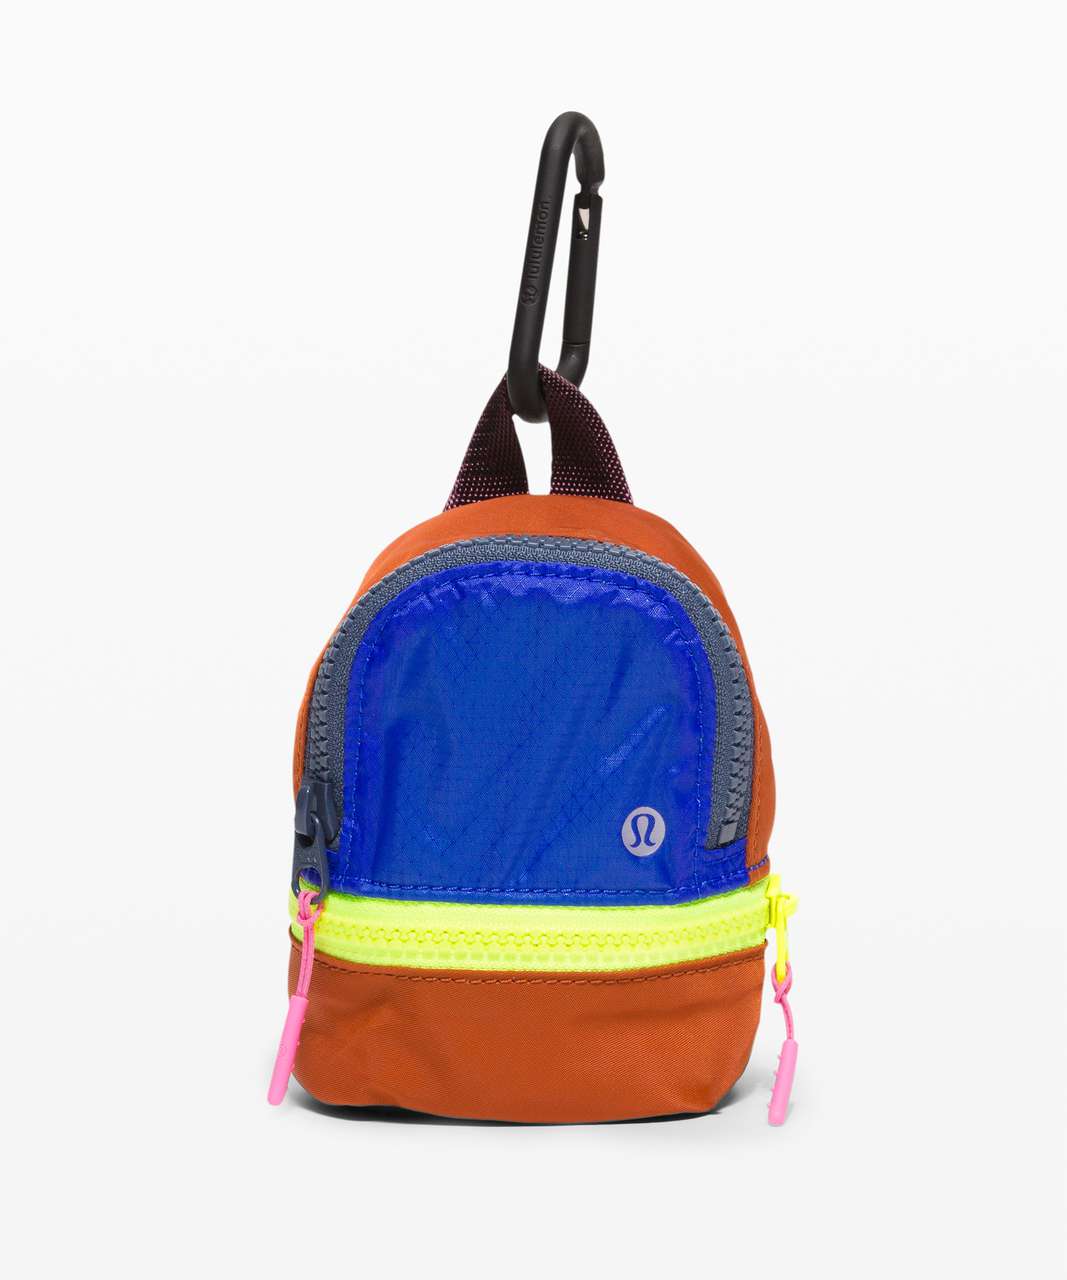 Lululemon City Adventurer Backpack *Nano - Saffron / Cerulean Blue / Cassis